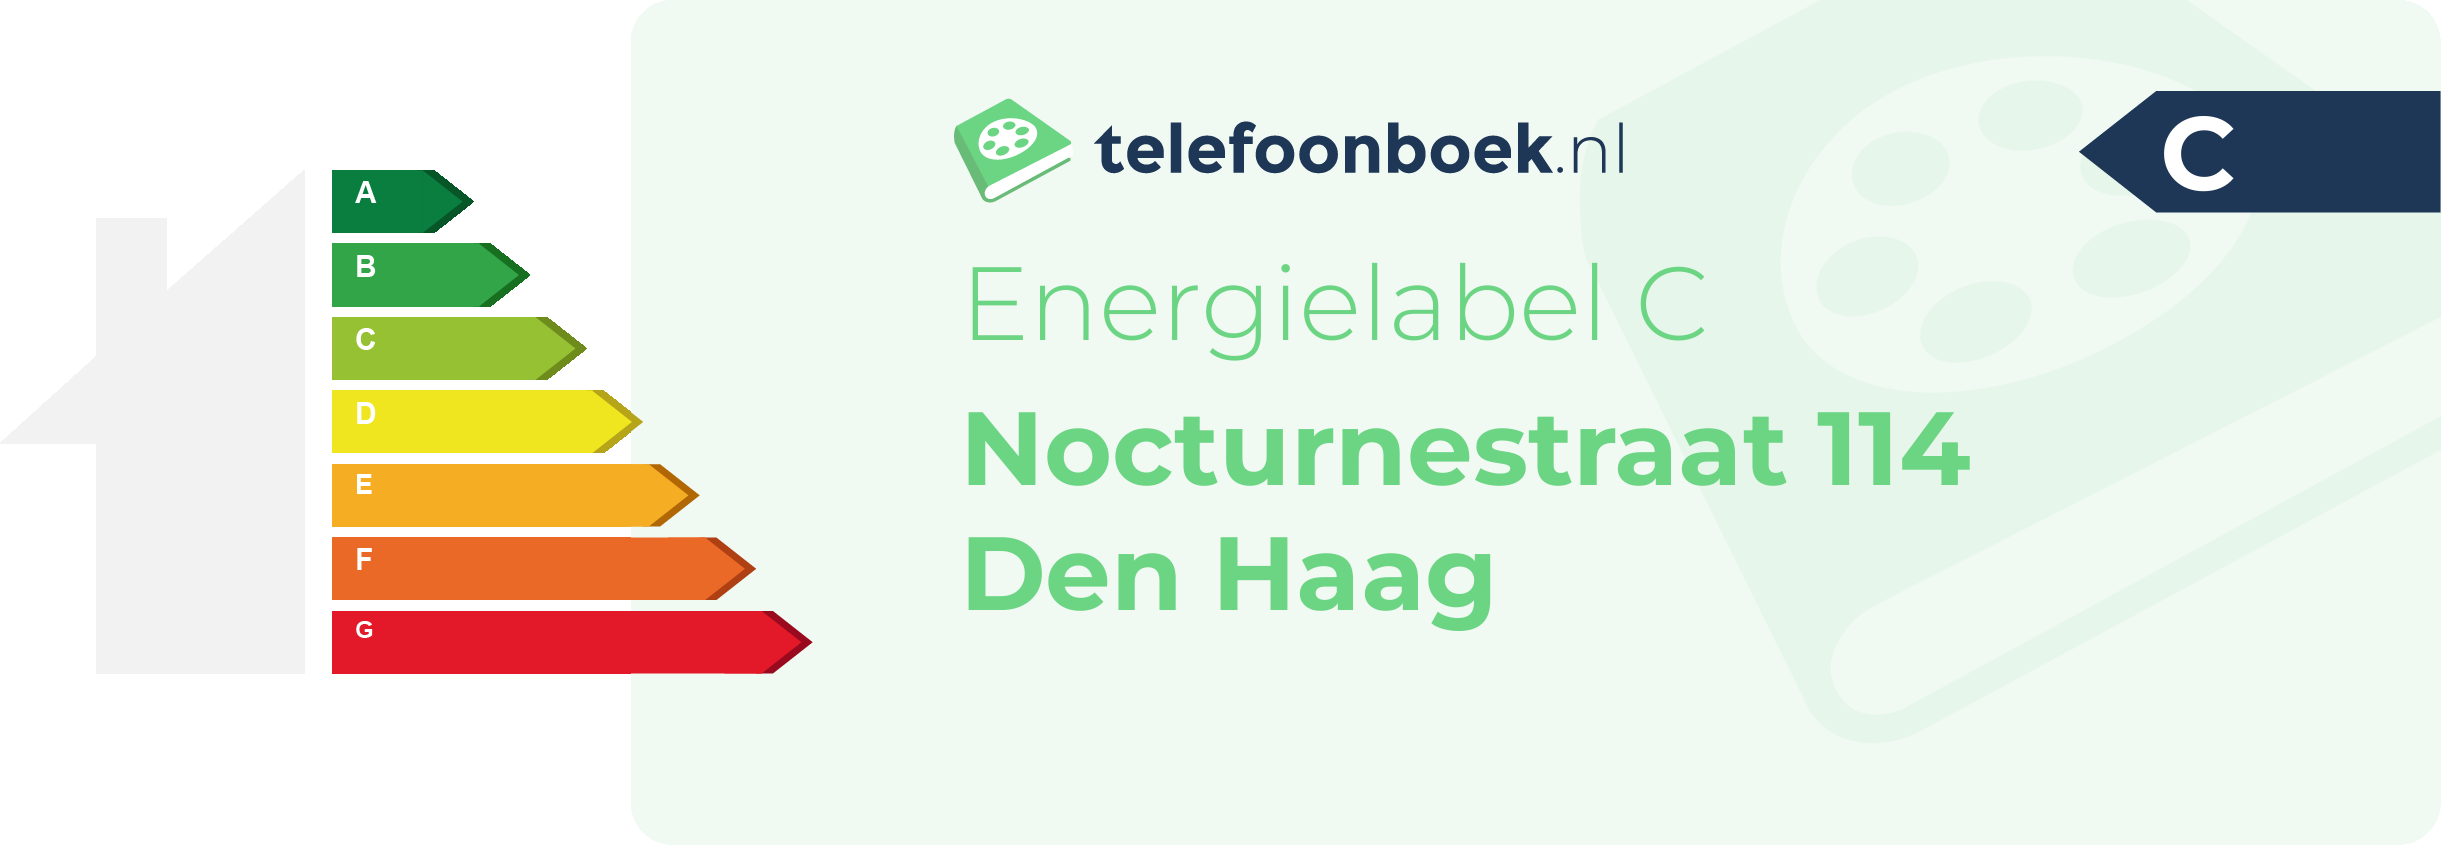 Energielabel Nocturnestraat 114 Den Haag